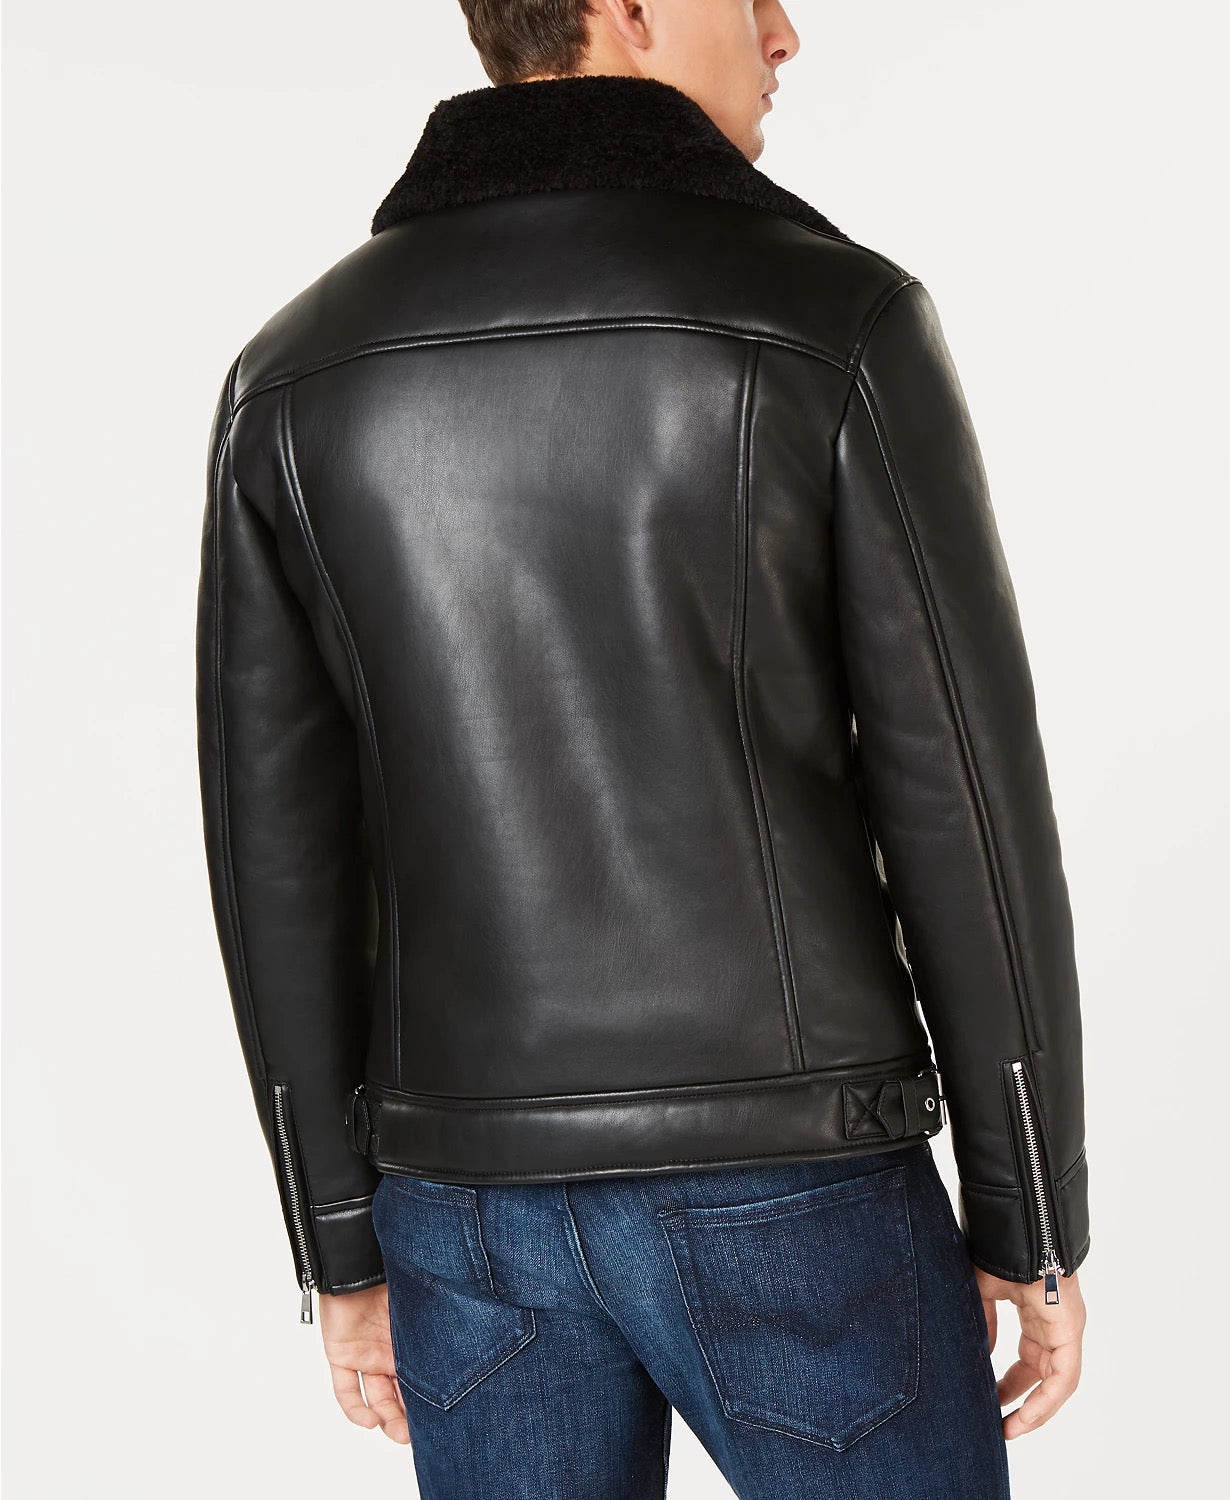 GUESS Mens Asymmetrical Faux Leather Jacket Black XL